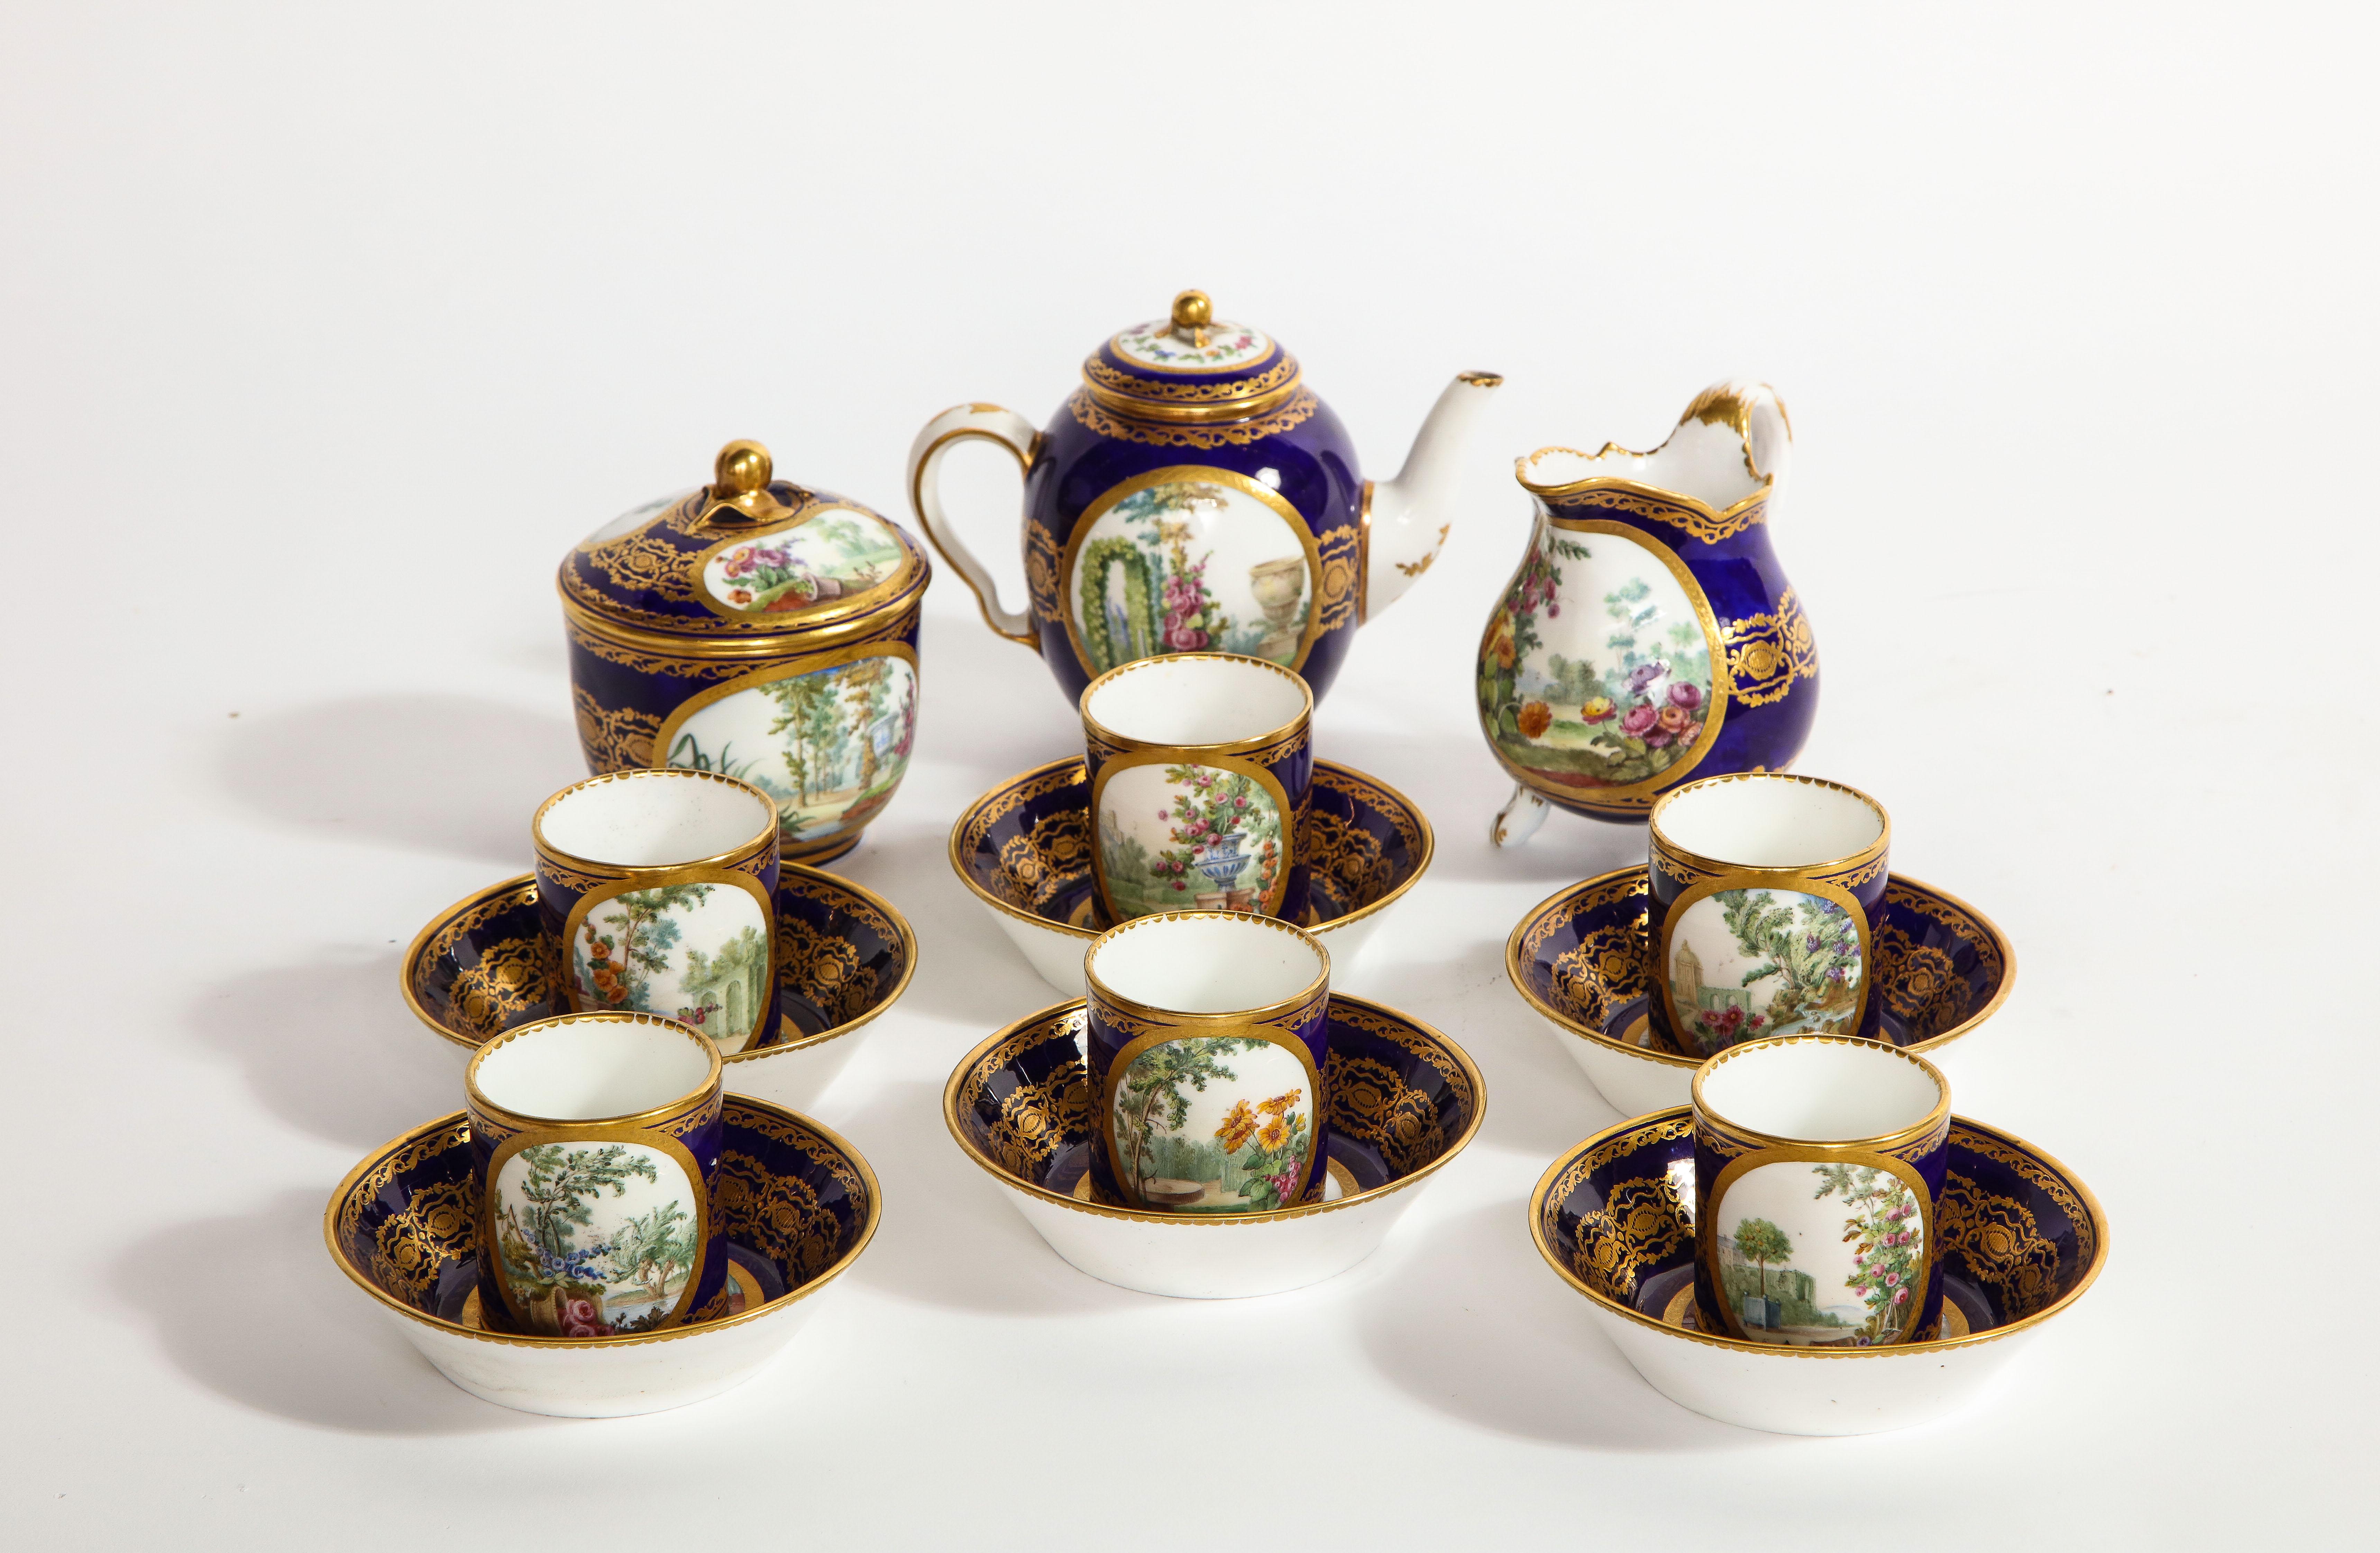 Merveilleux service à thé complet en porcelaine de Sèvres d'époque Louis XVI, avec lettre de datation pour 1782. Décor de paysages sur un fond bleu foncé 